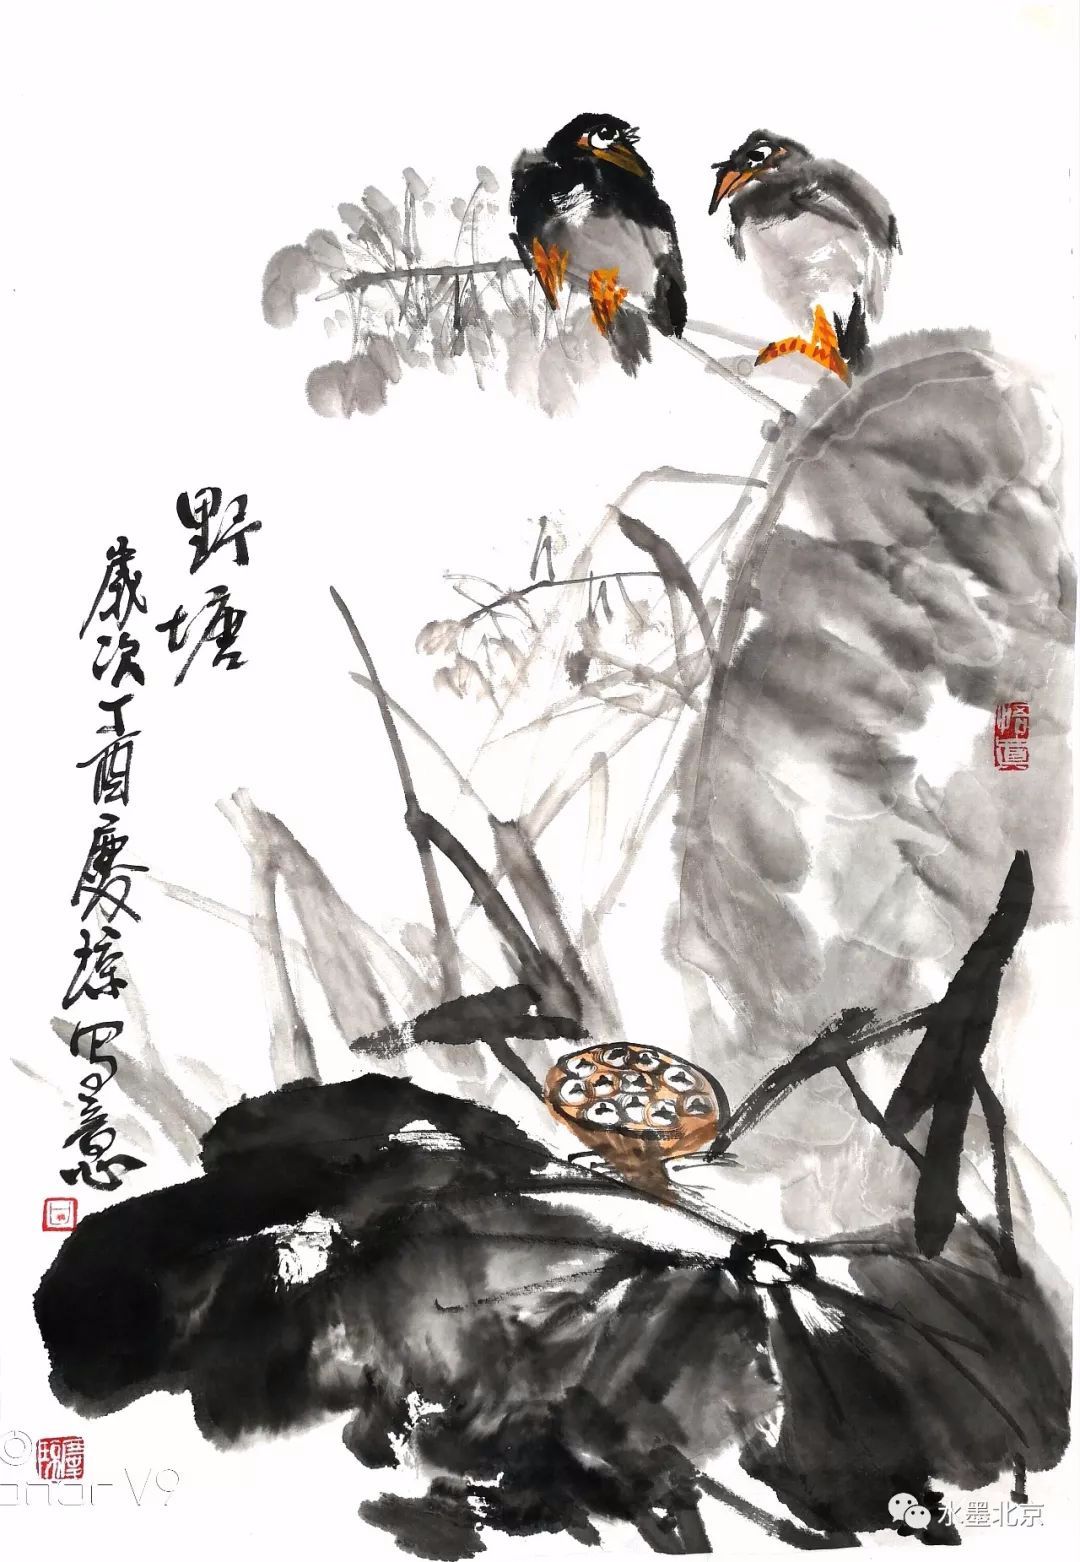 中国画的笔墨